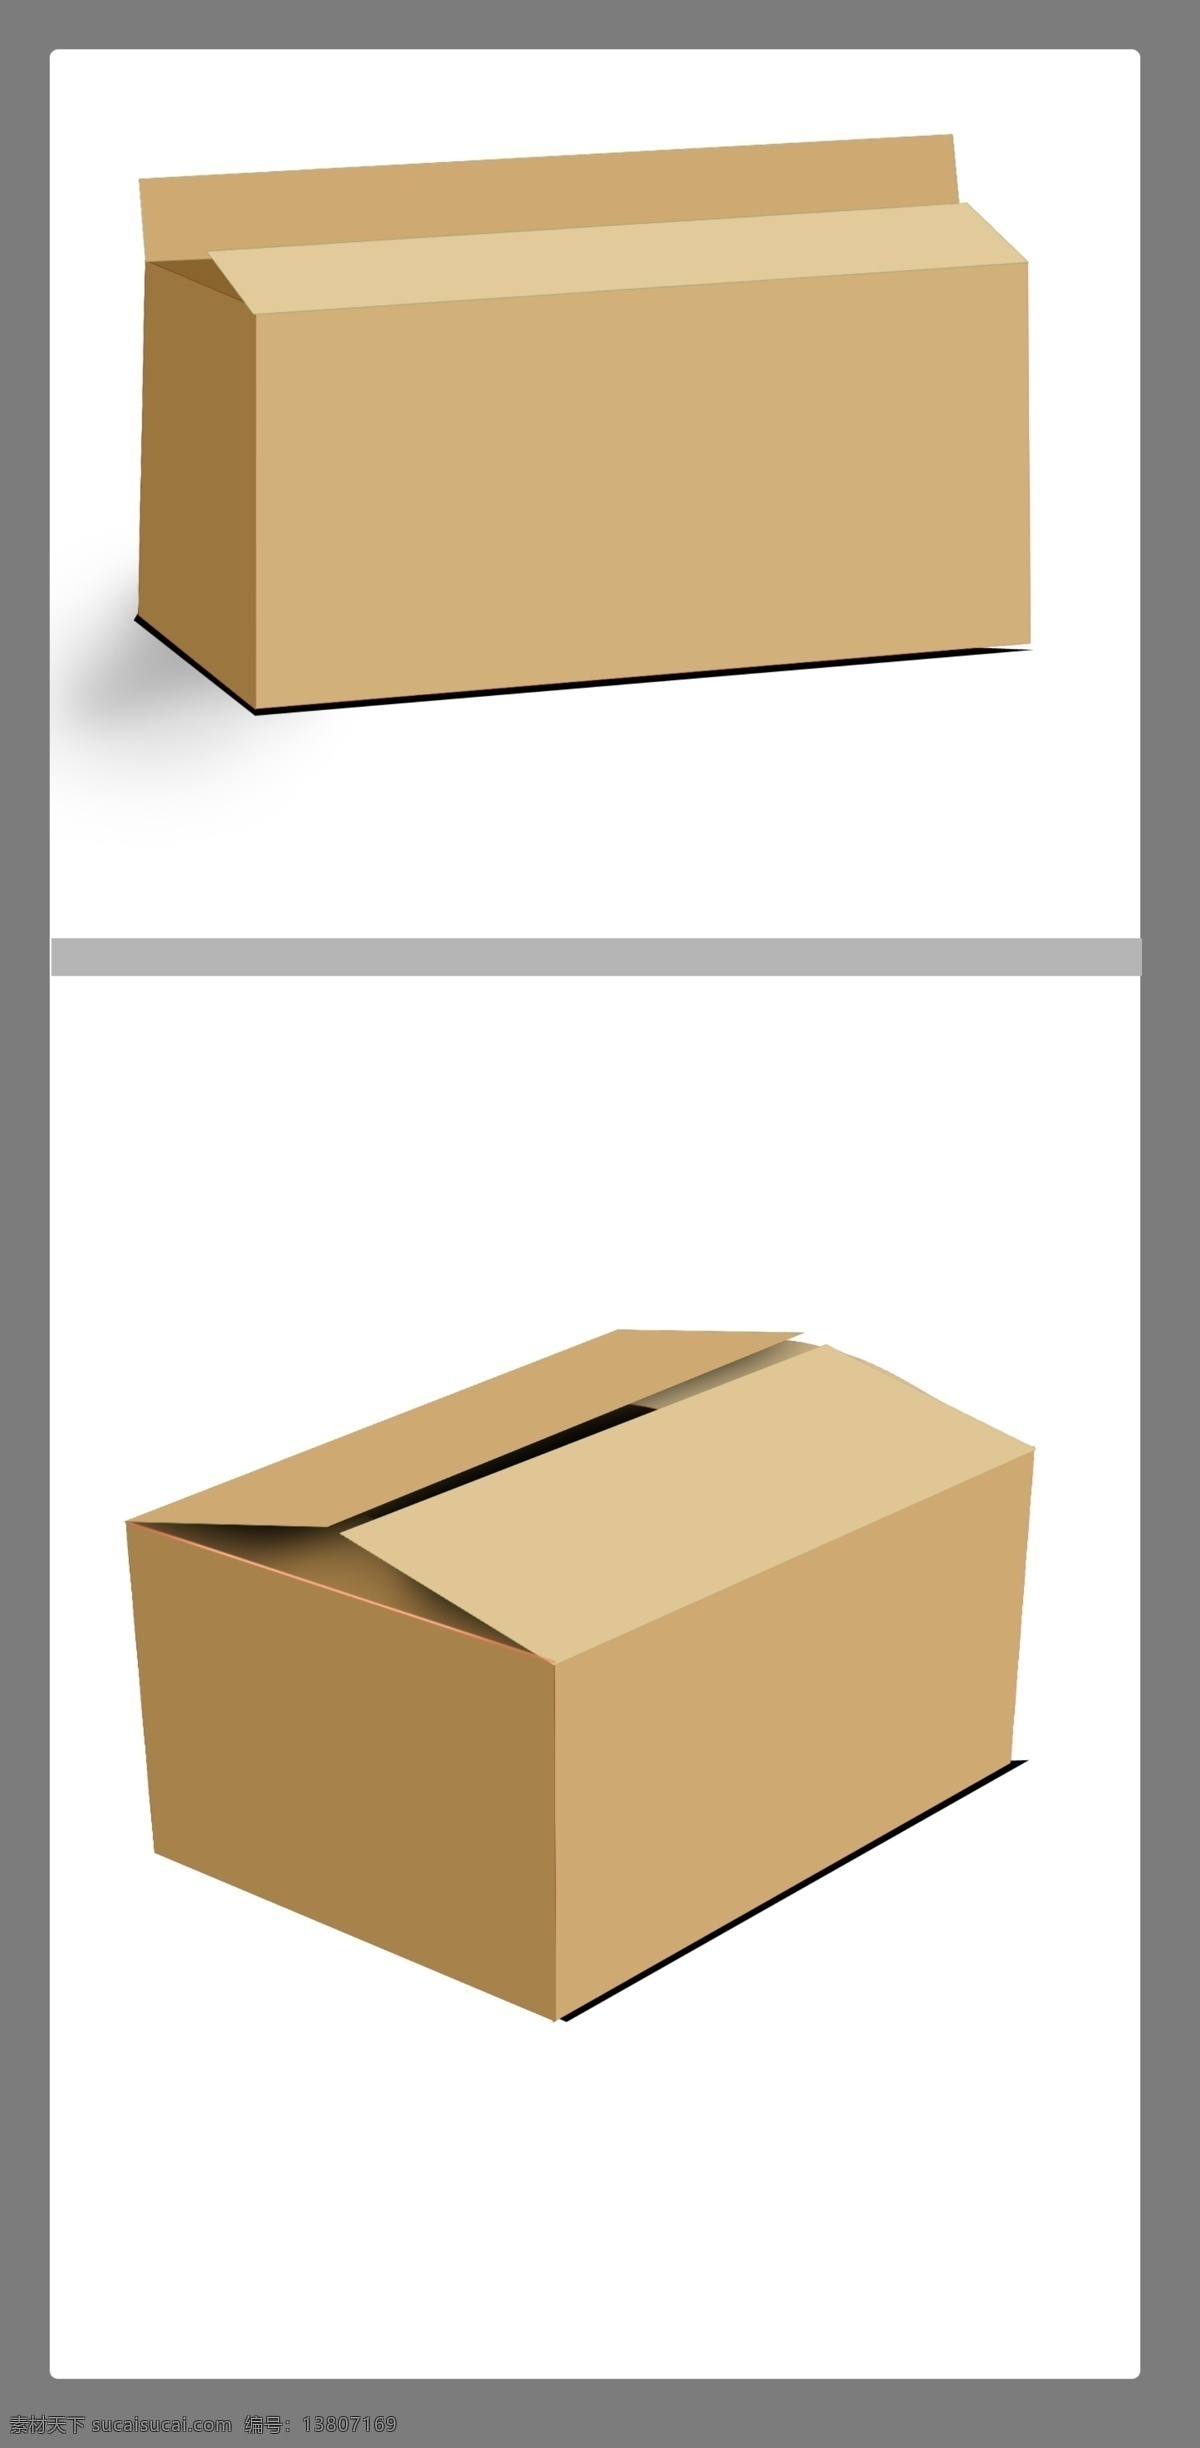 包装箱效果图 分层 牛皮纸箱效果 包装箱样机 箱子效果图 包装设计